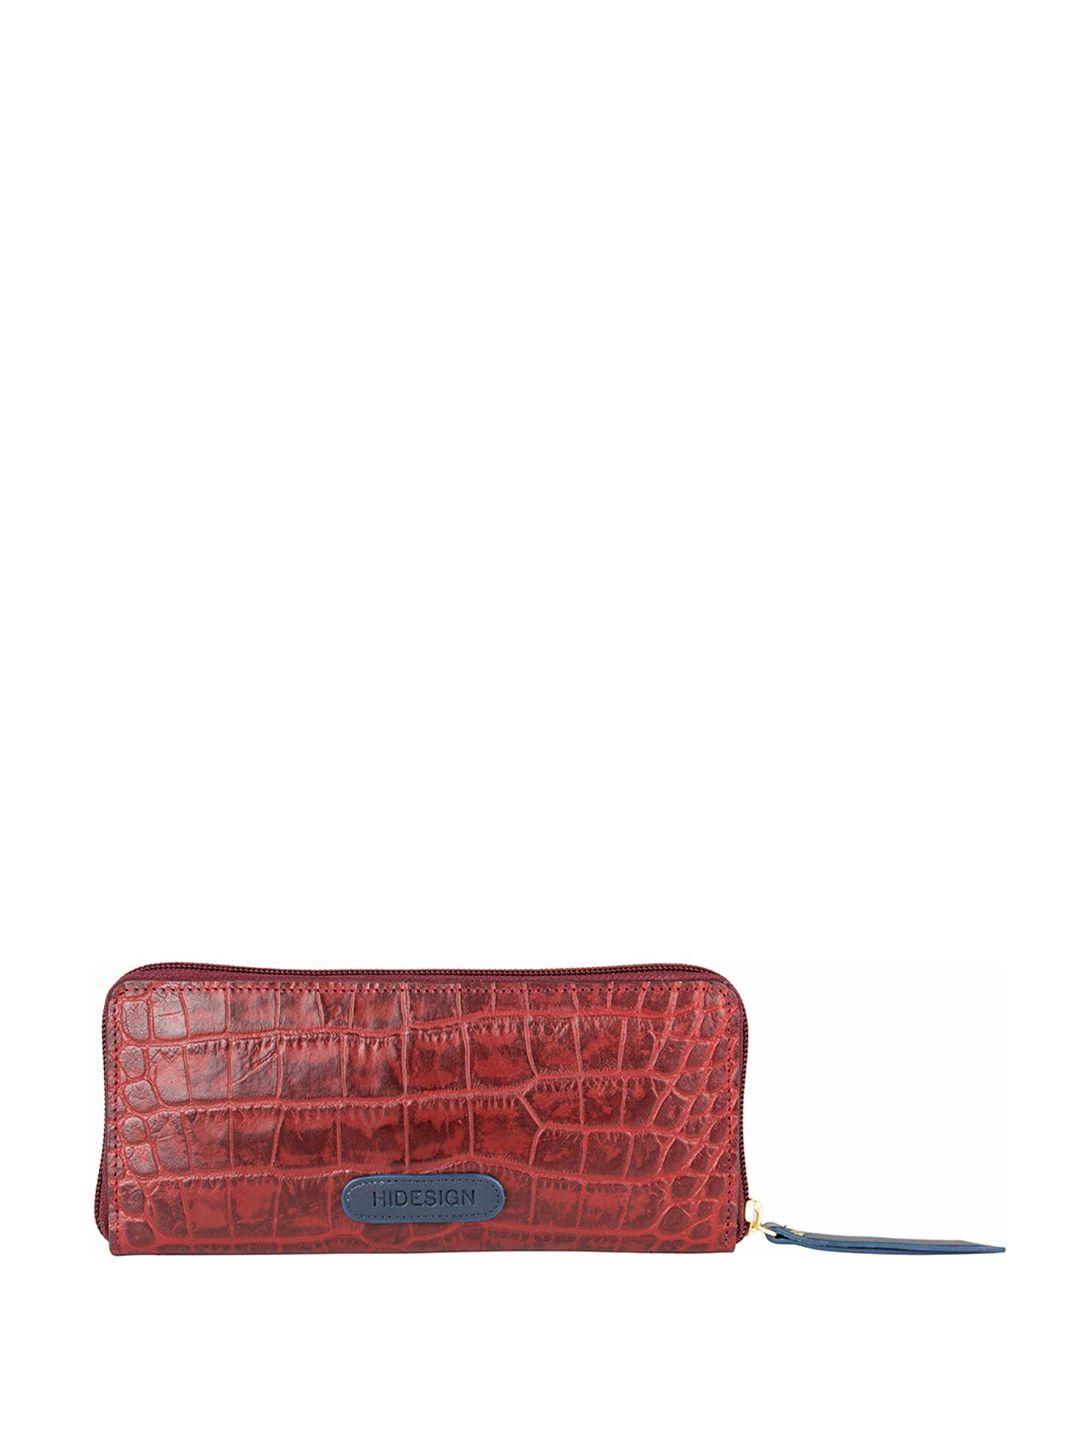 hidesign animal textured purse clutch